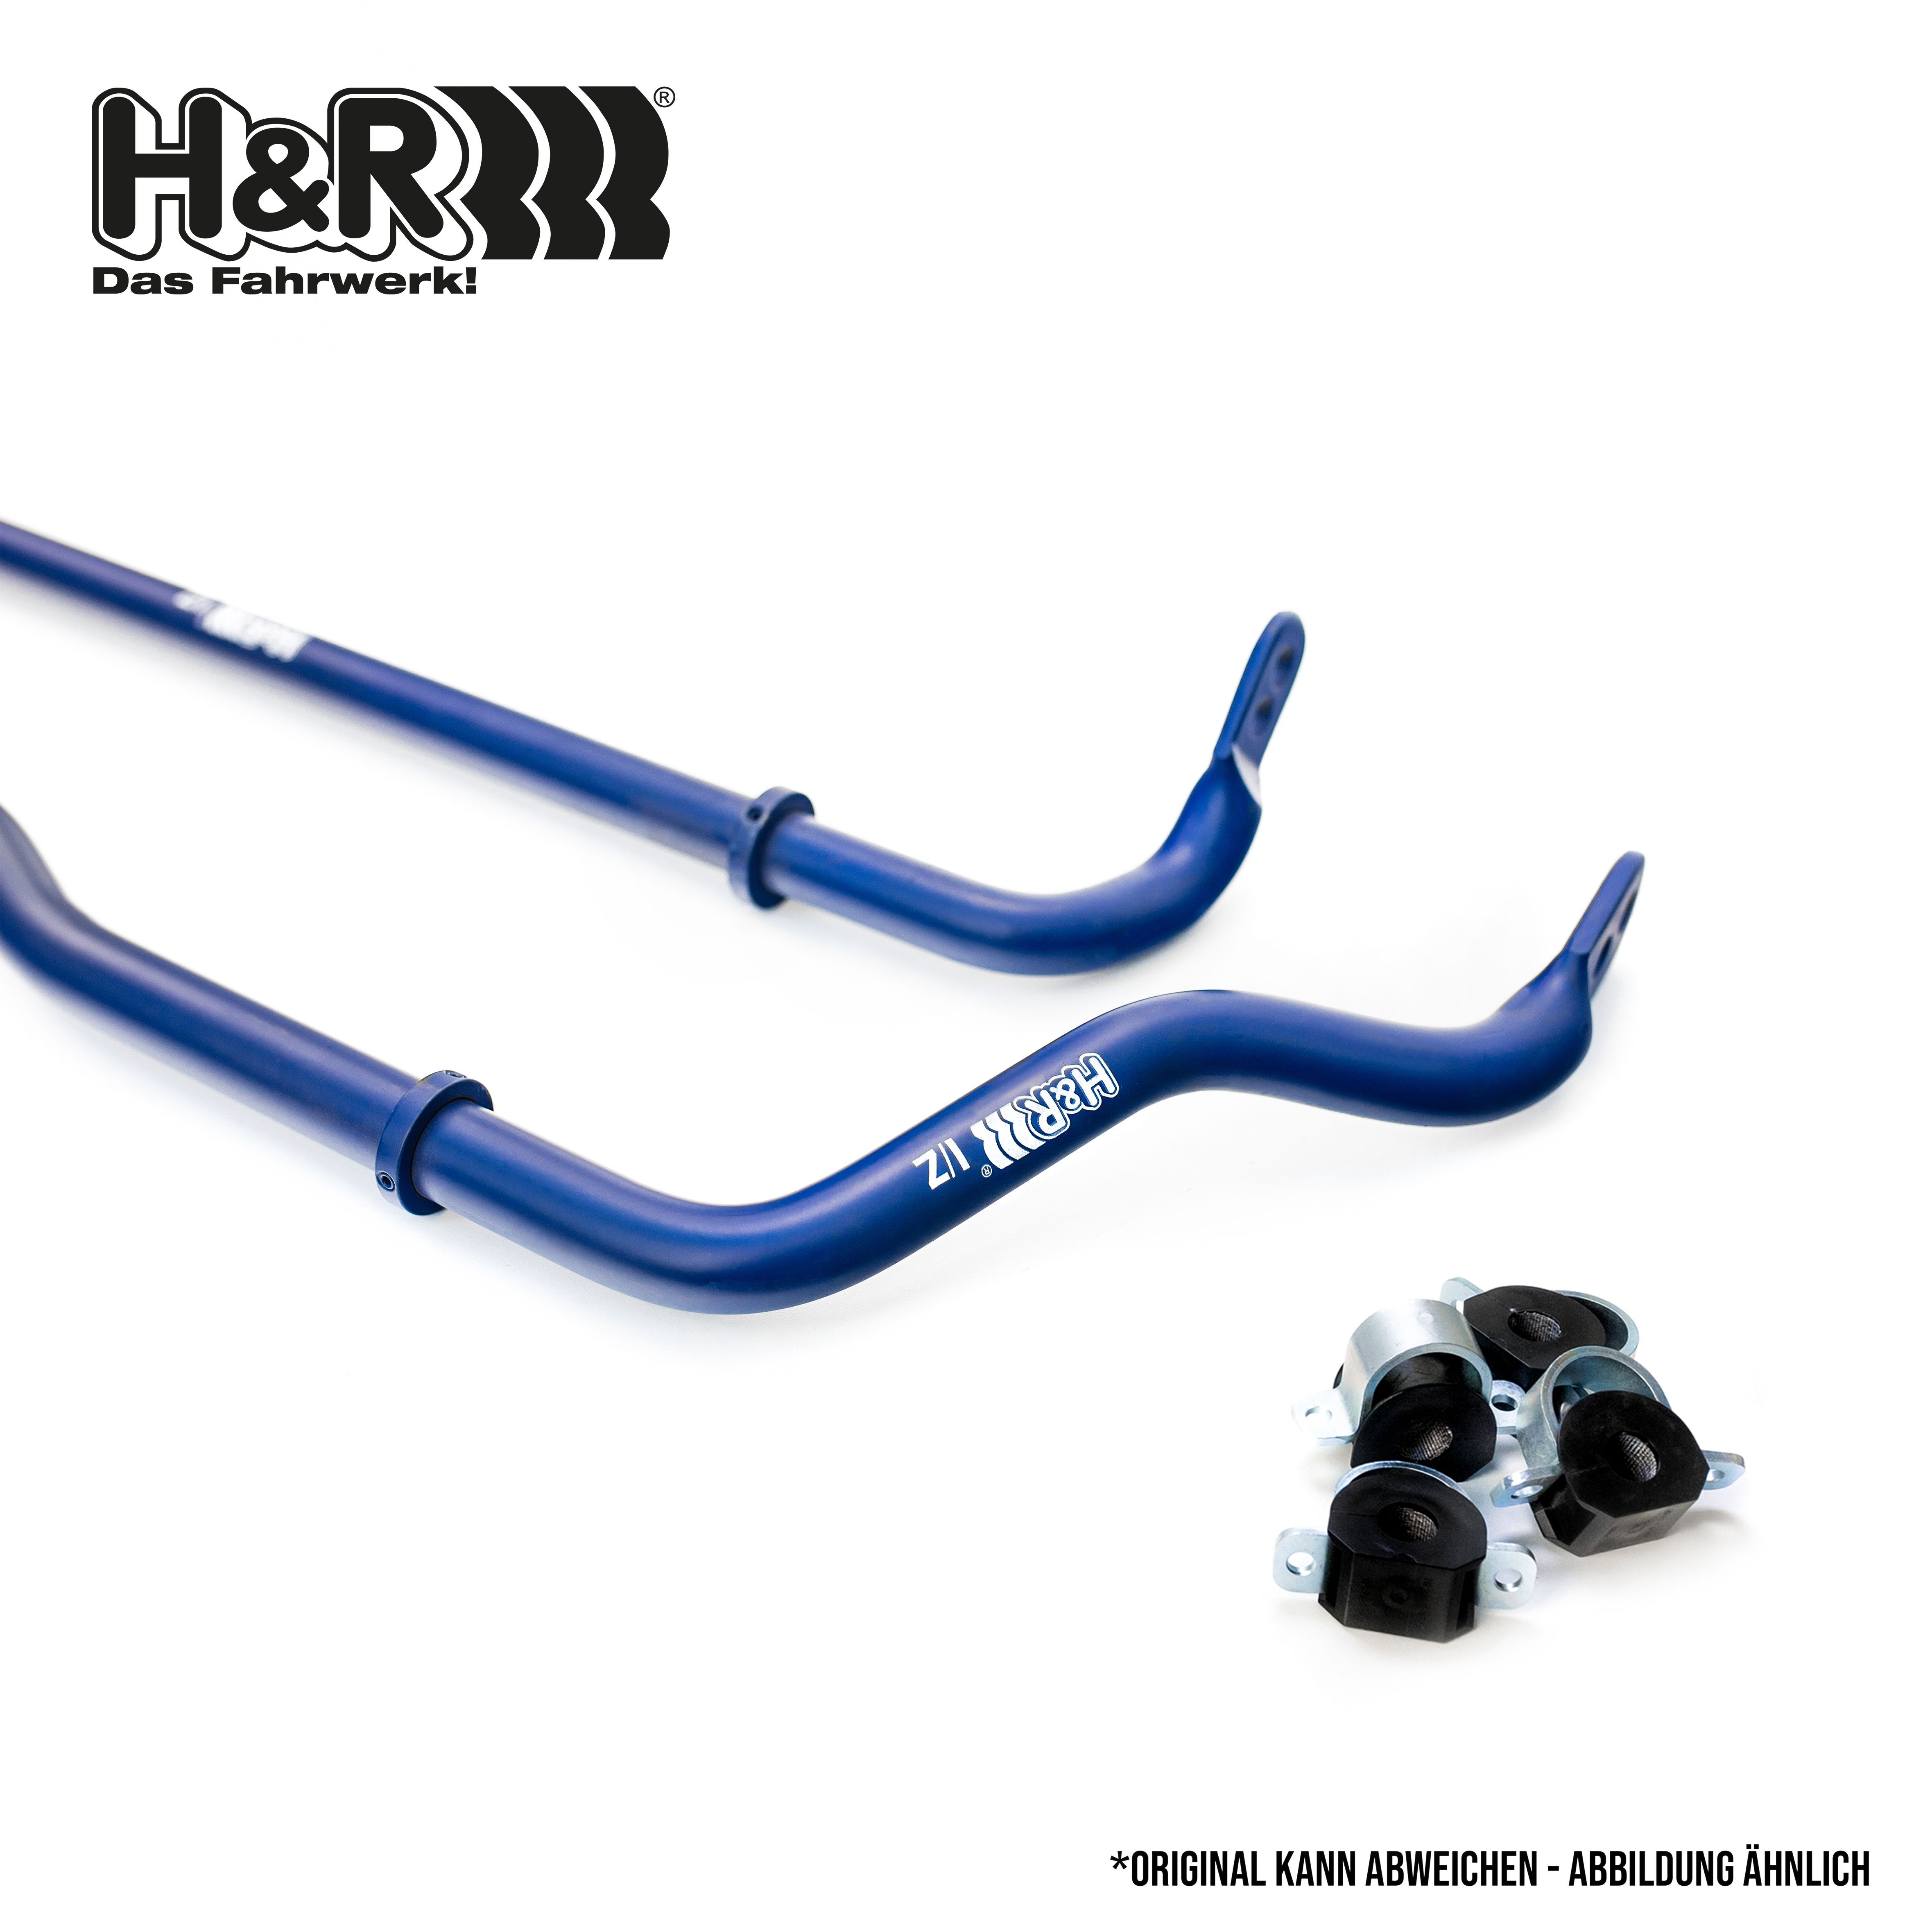 H&R Stabiliser Set 33524-1 buy